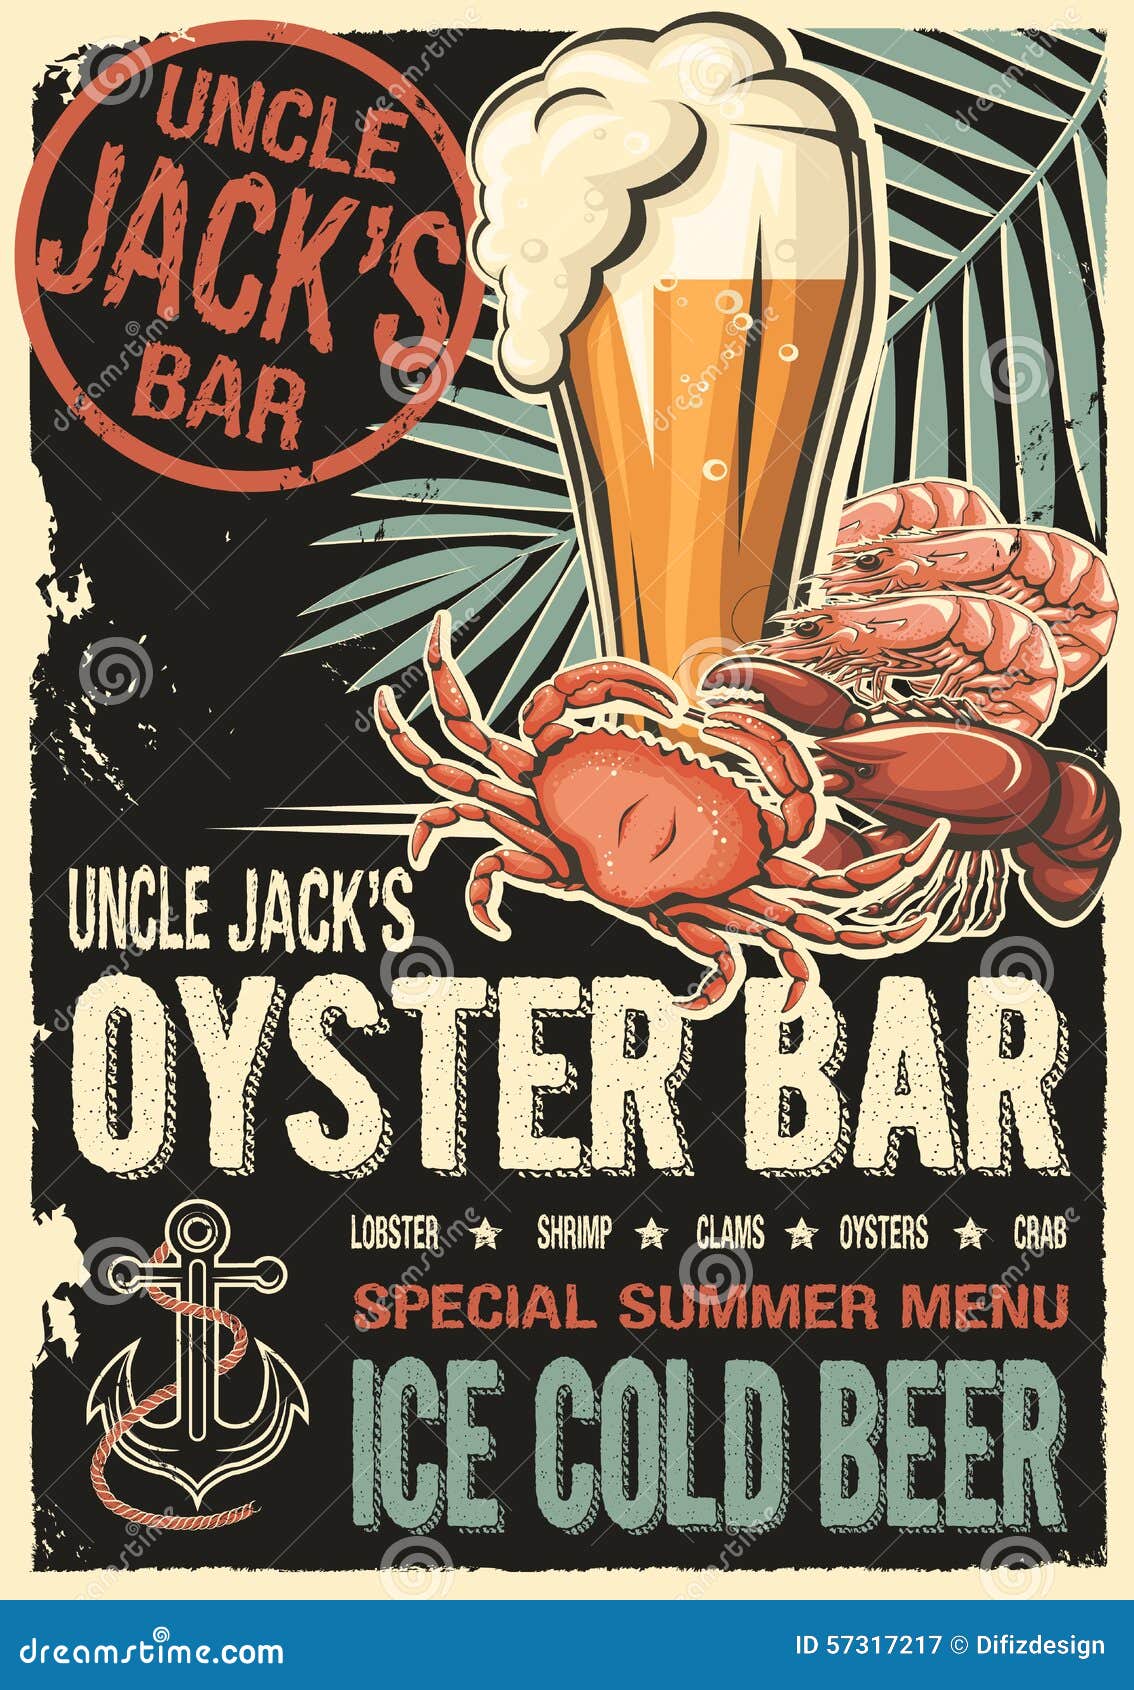 uncle jacks raw fish bar poster.